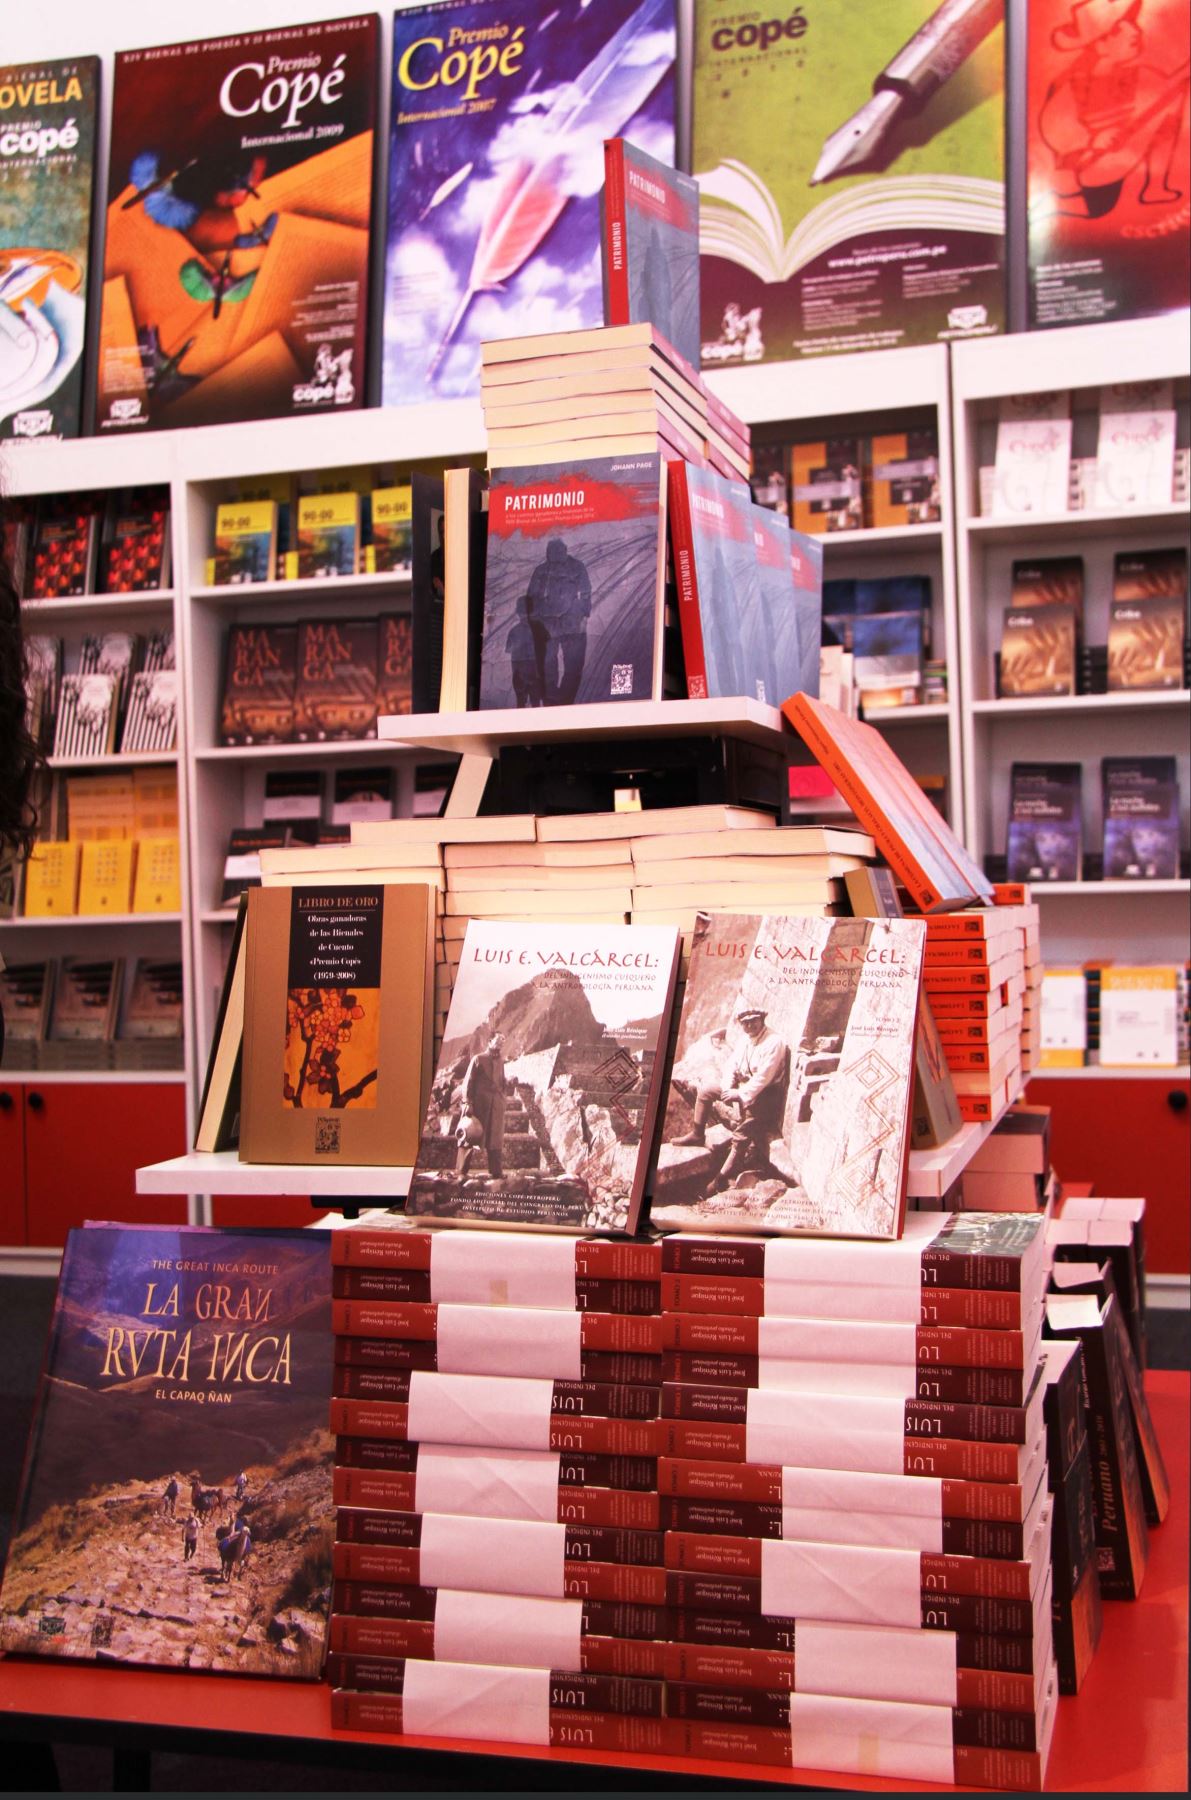 Stand de Petroperú en la Feria del Libro de Lima. Allí se ofrecen las obras ganadoras del premio Copé.